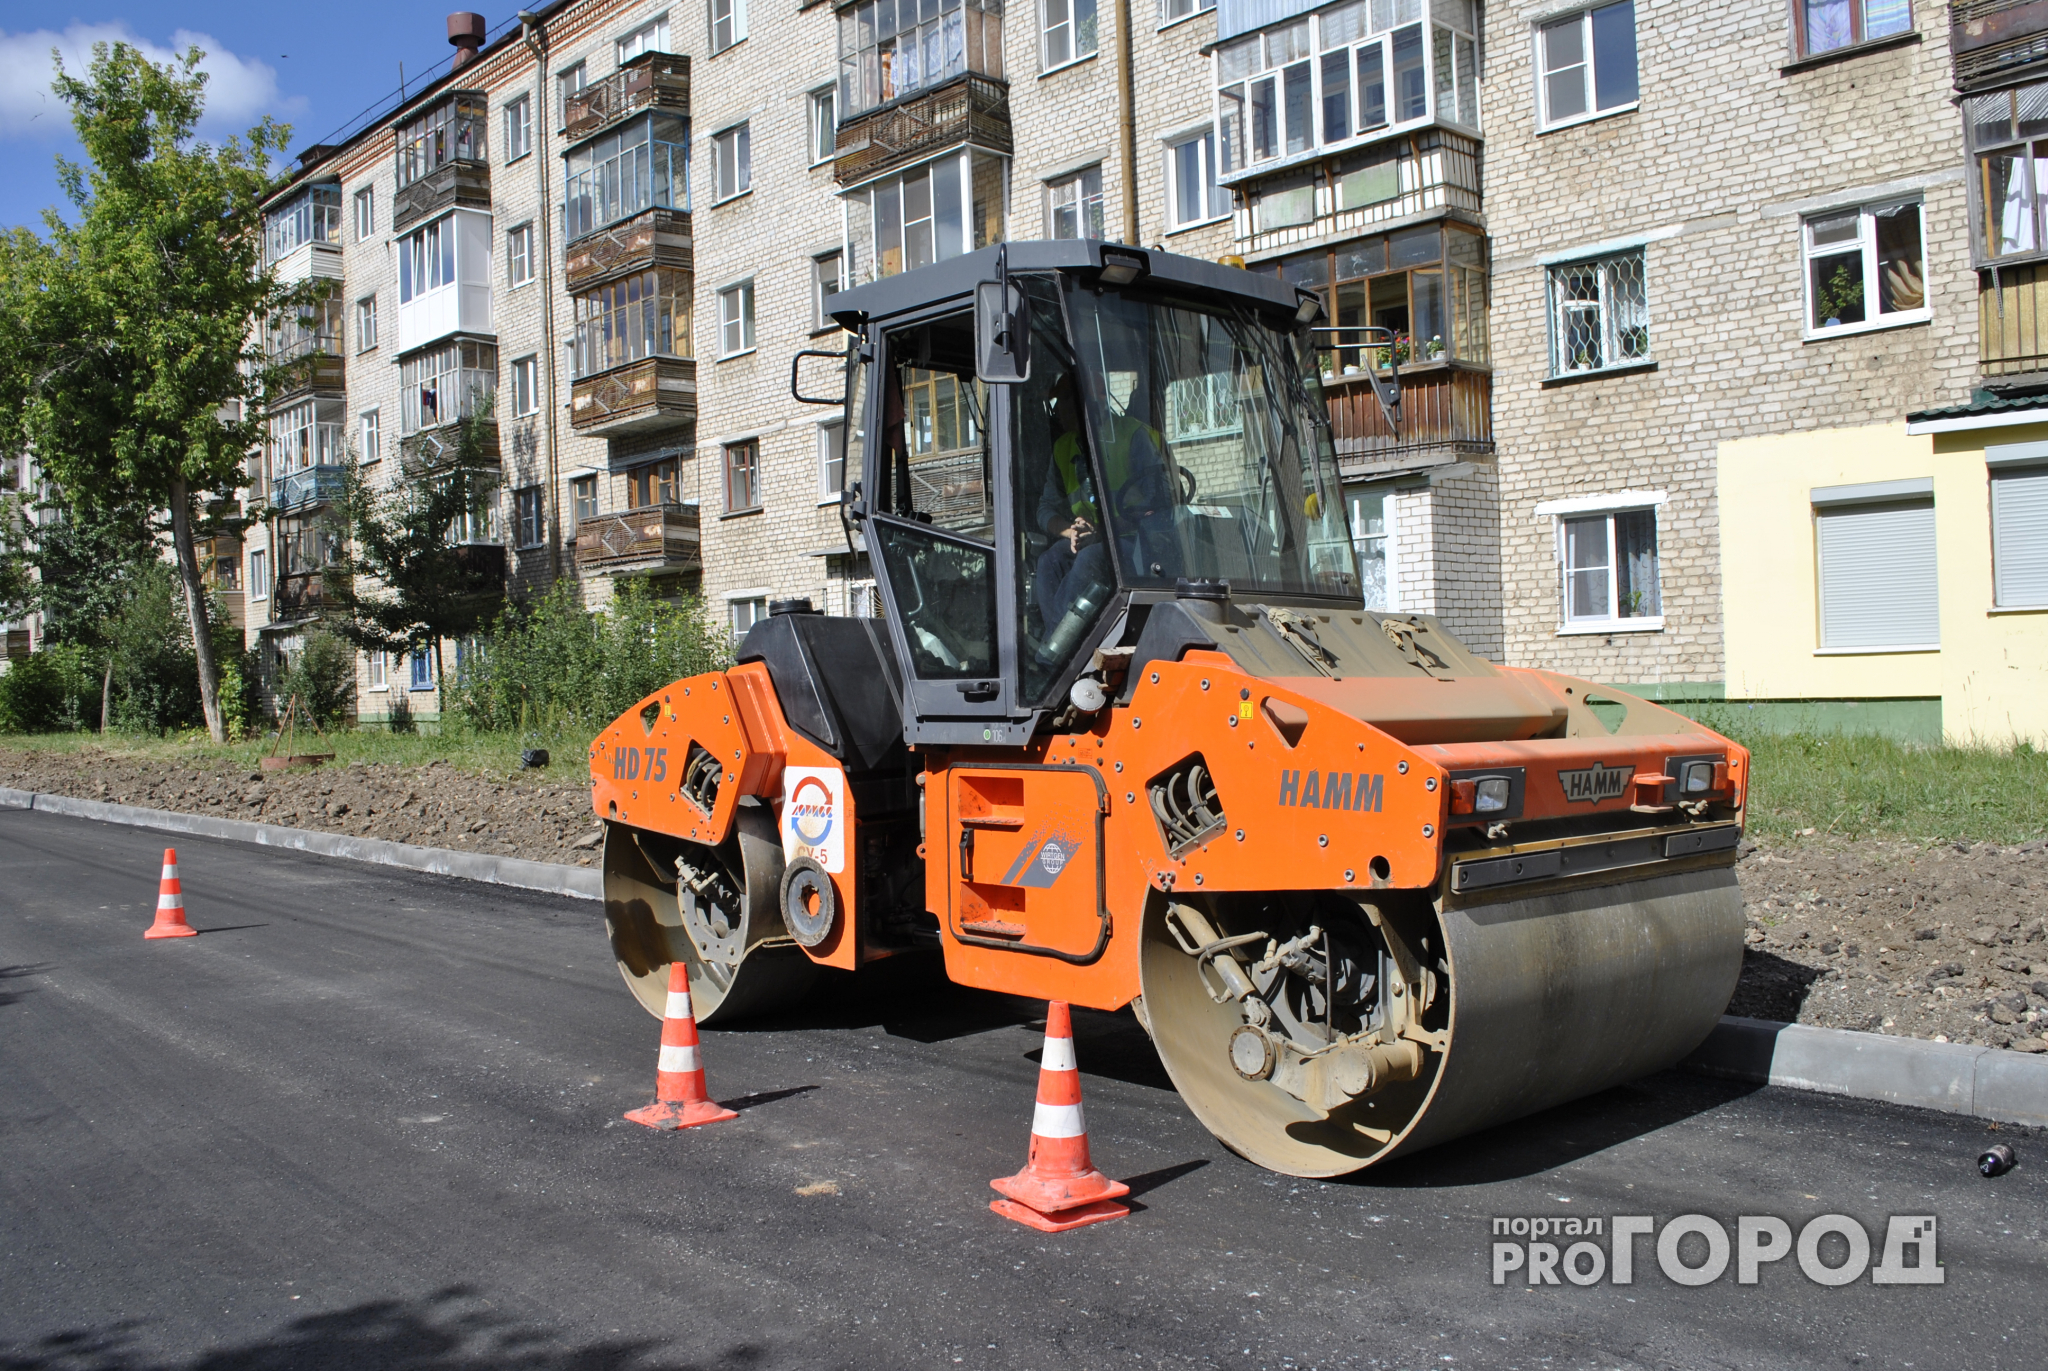 Подрядчики, ремонтирующие дороги в Кирове, перешли на круглосуточный график